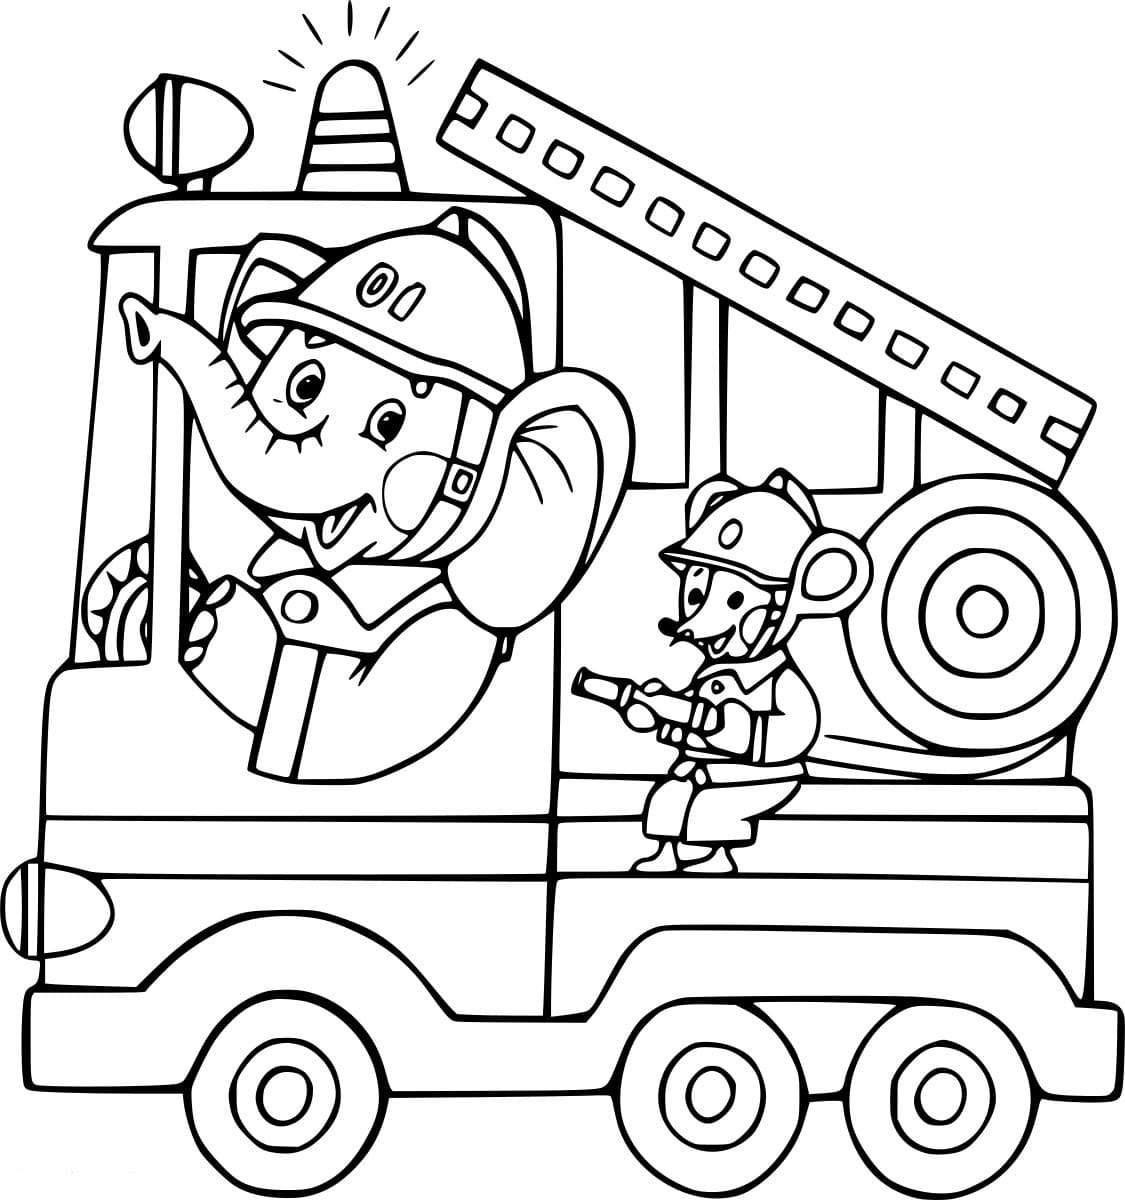 Elefant und Maus auf dem Feuerwehrauto